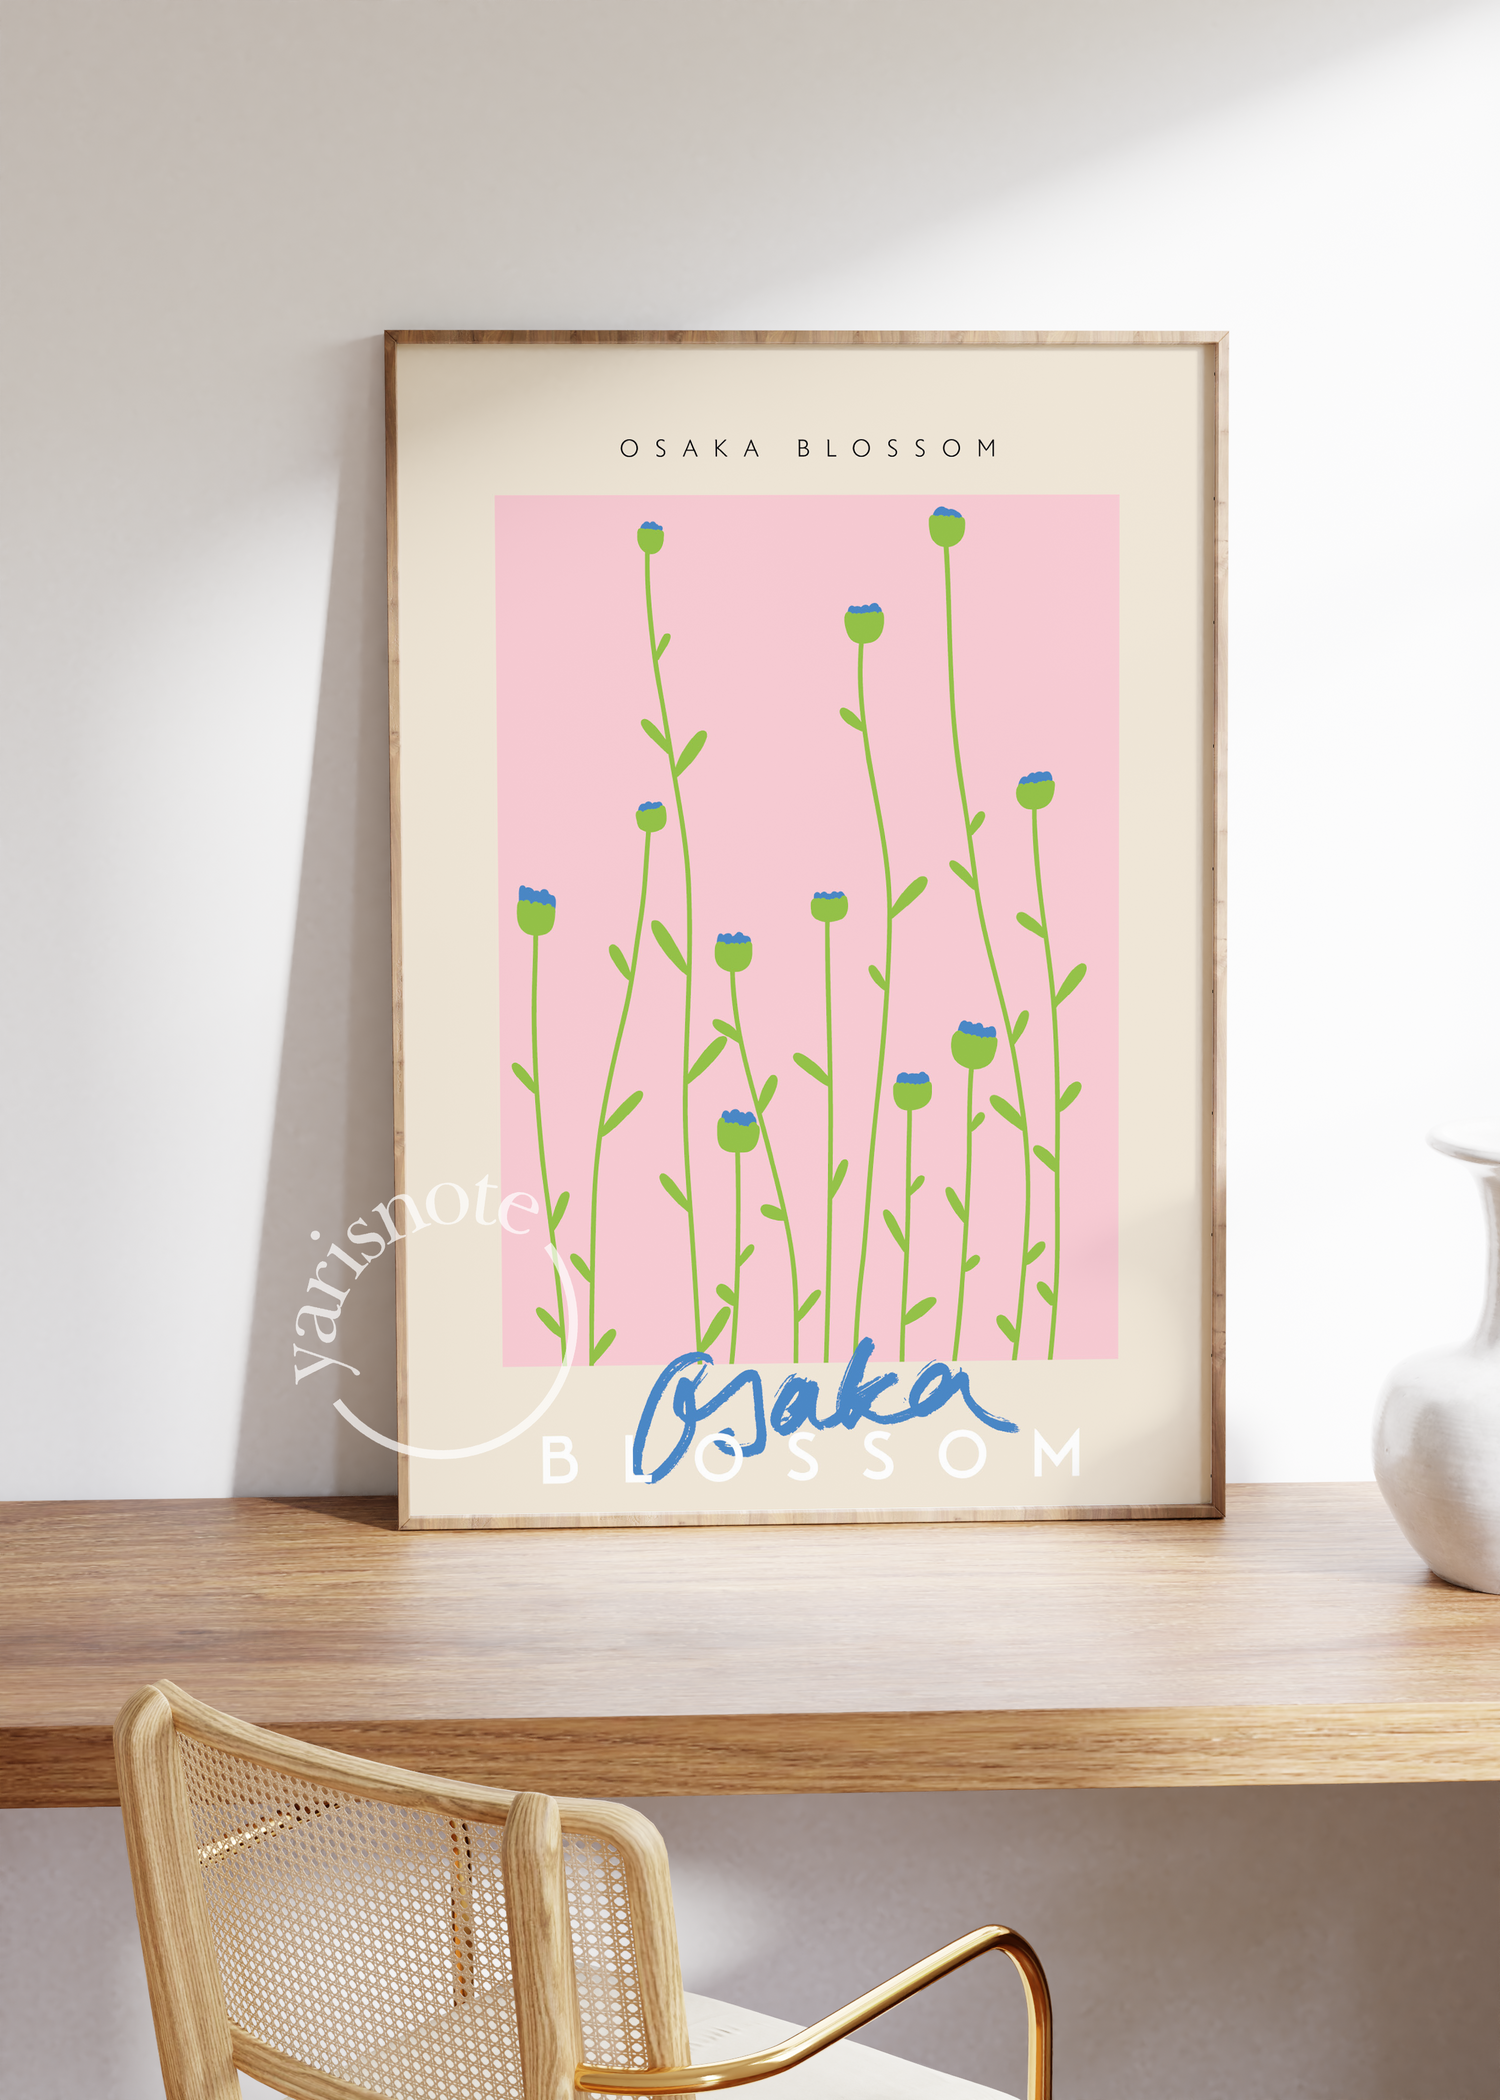 Osaka Blossom Unframed Poster